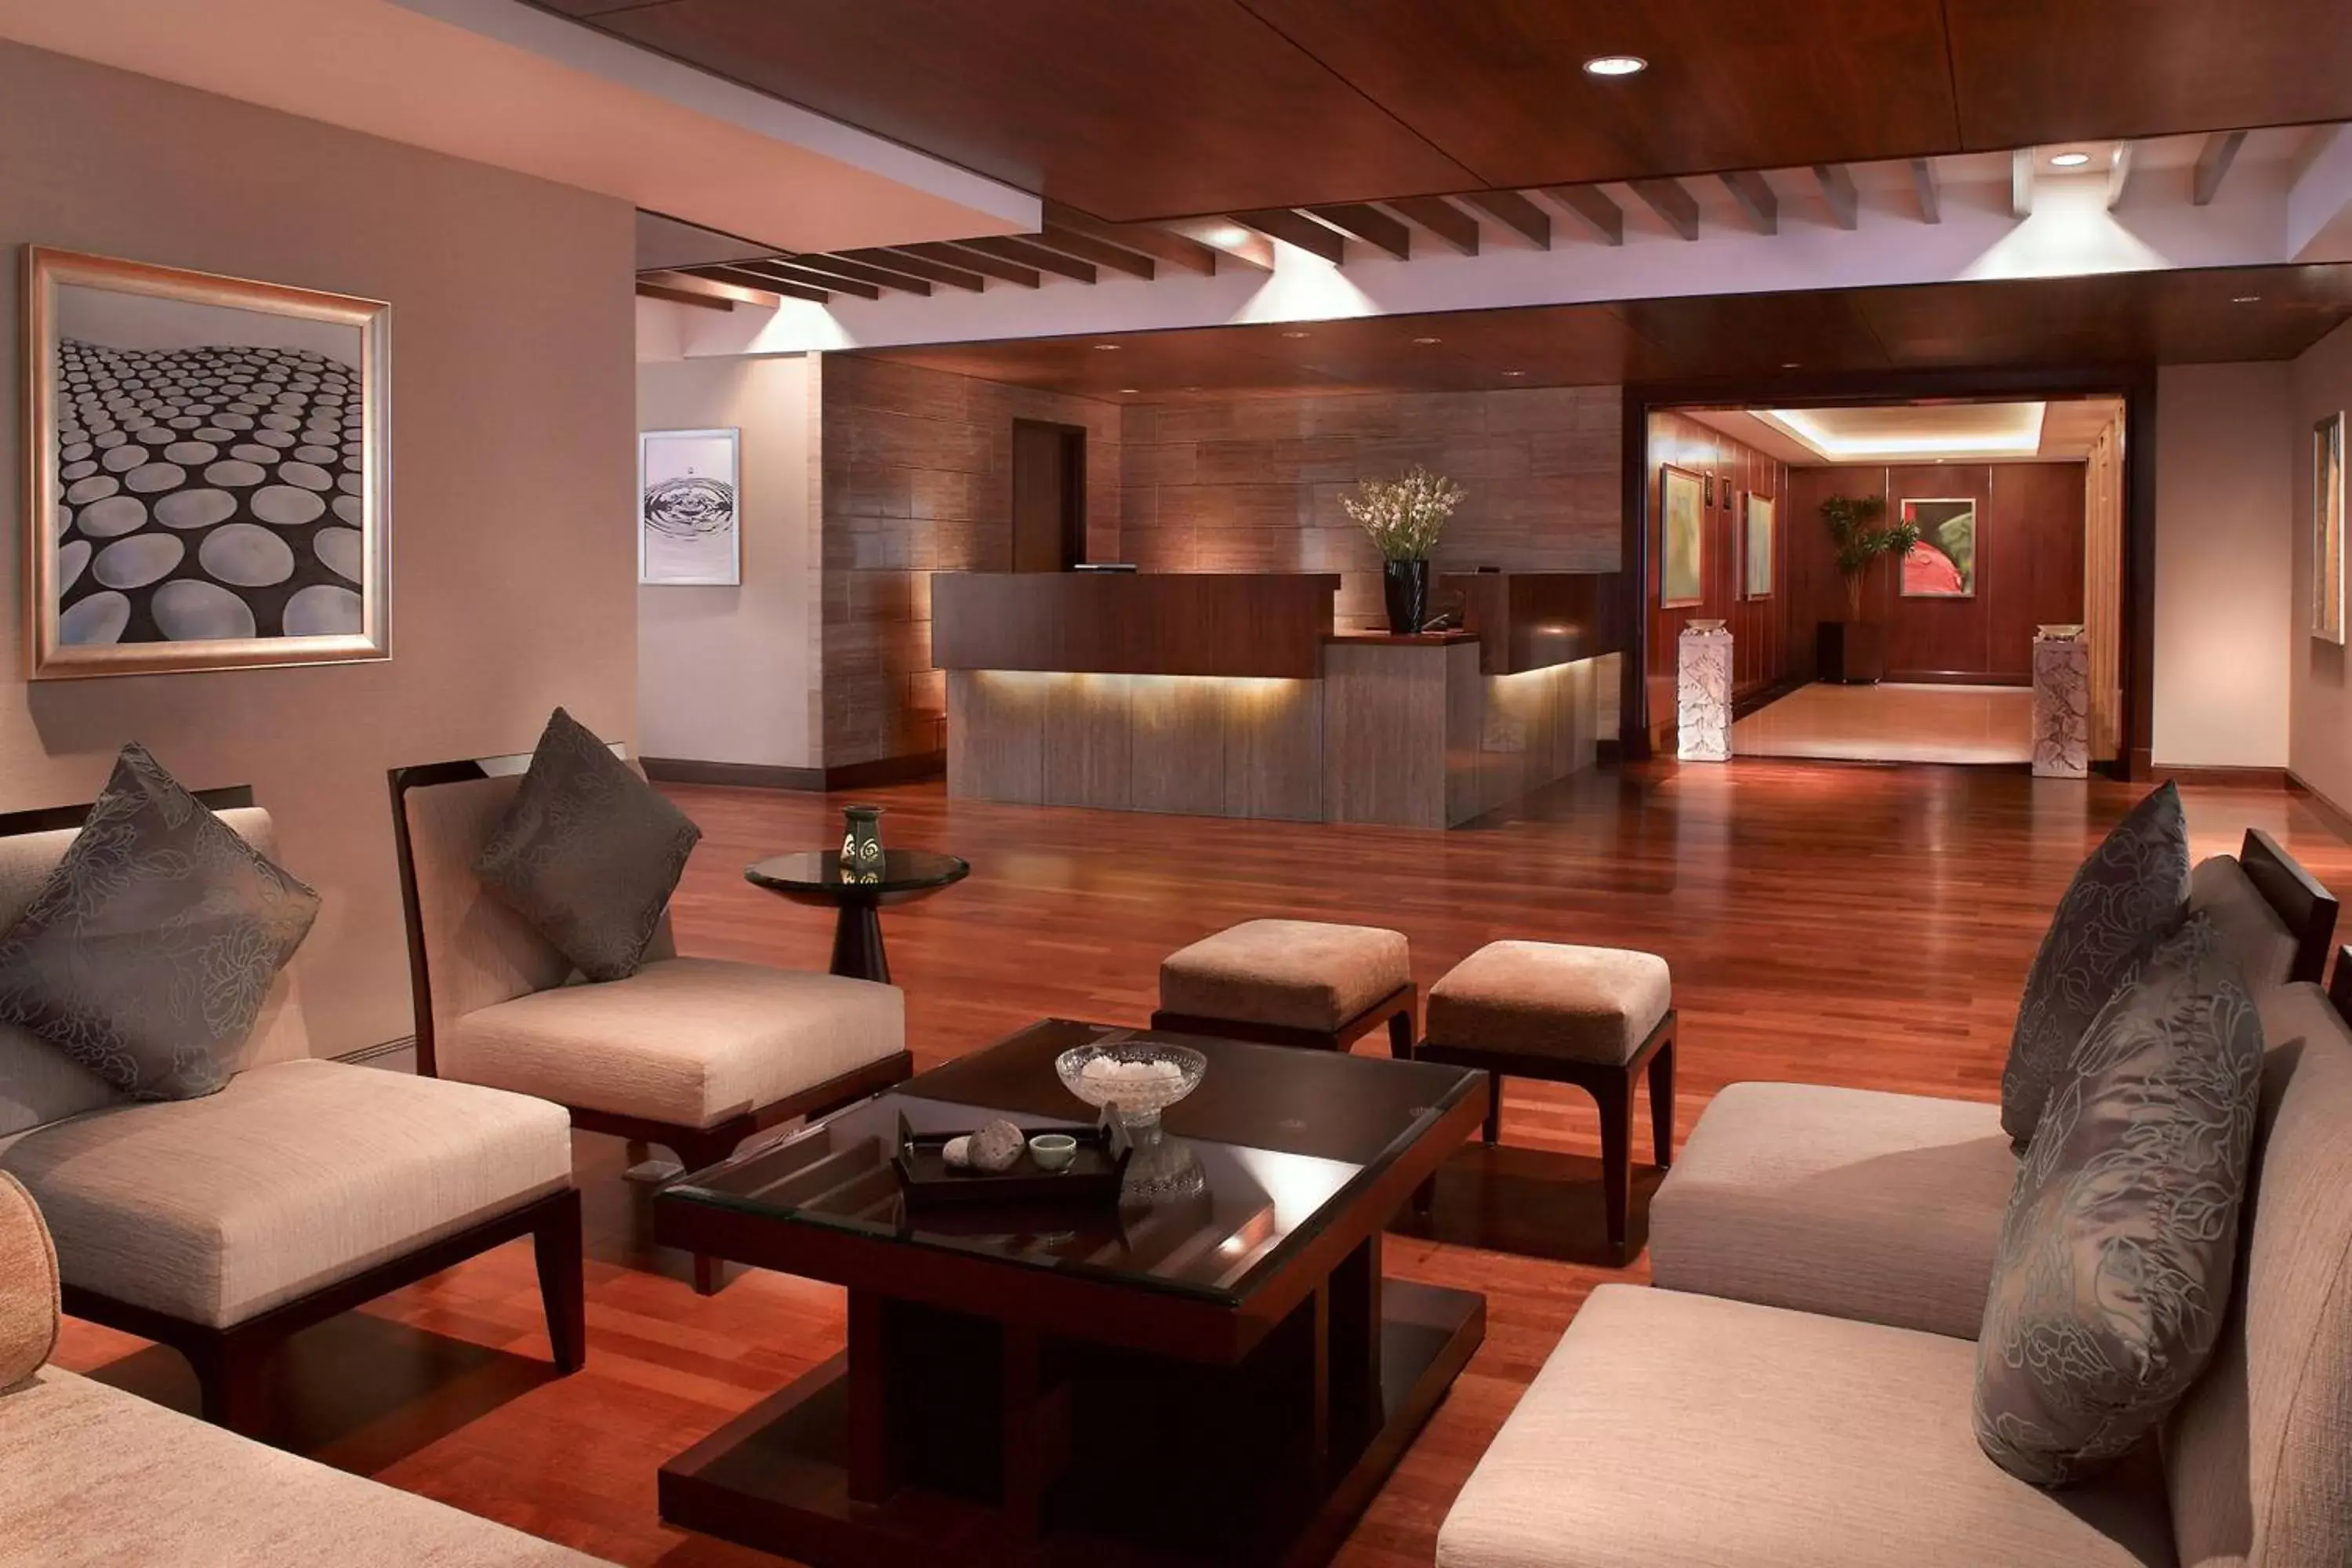 Lounge or bar, Lobby/Reception in JW Marriott Hotel Medan